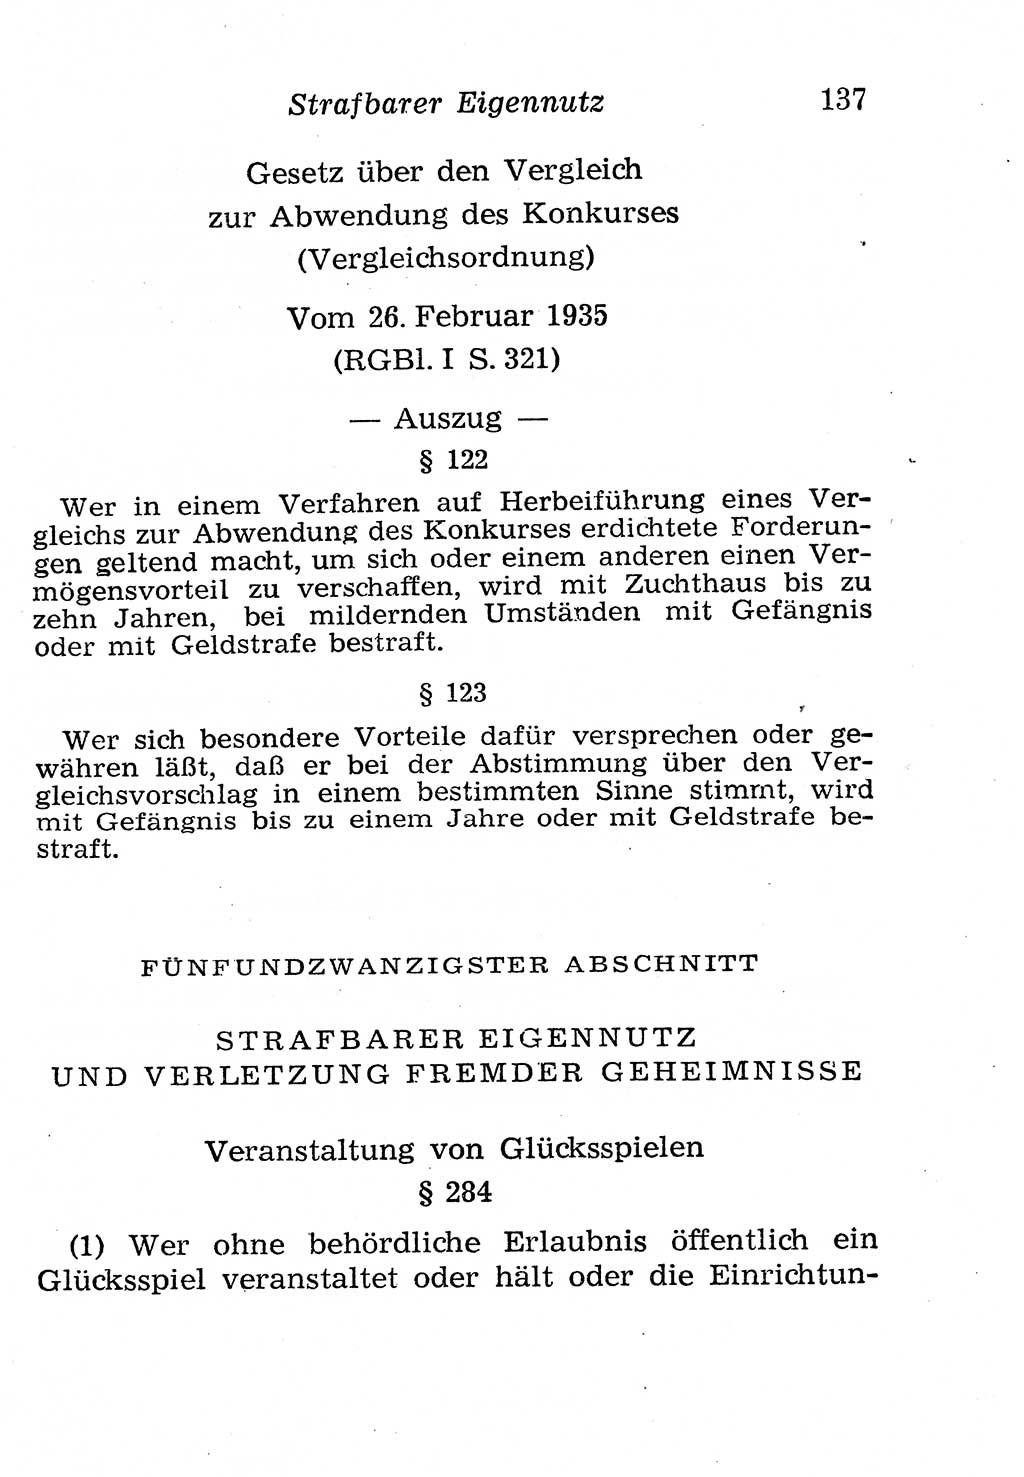 Strafgesetzbuch (StGB) und andere Strafgesetze [Deutsche Demokratische Republik (DDR)] 1958, Seite 137 (StGB Strafges. DDR 1958, S. 137)